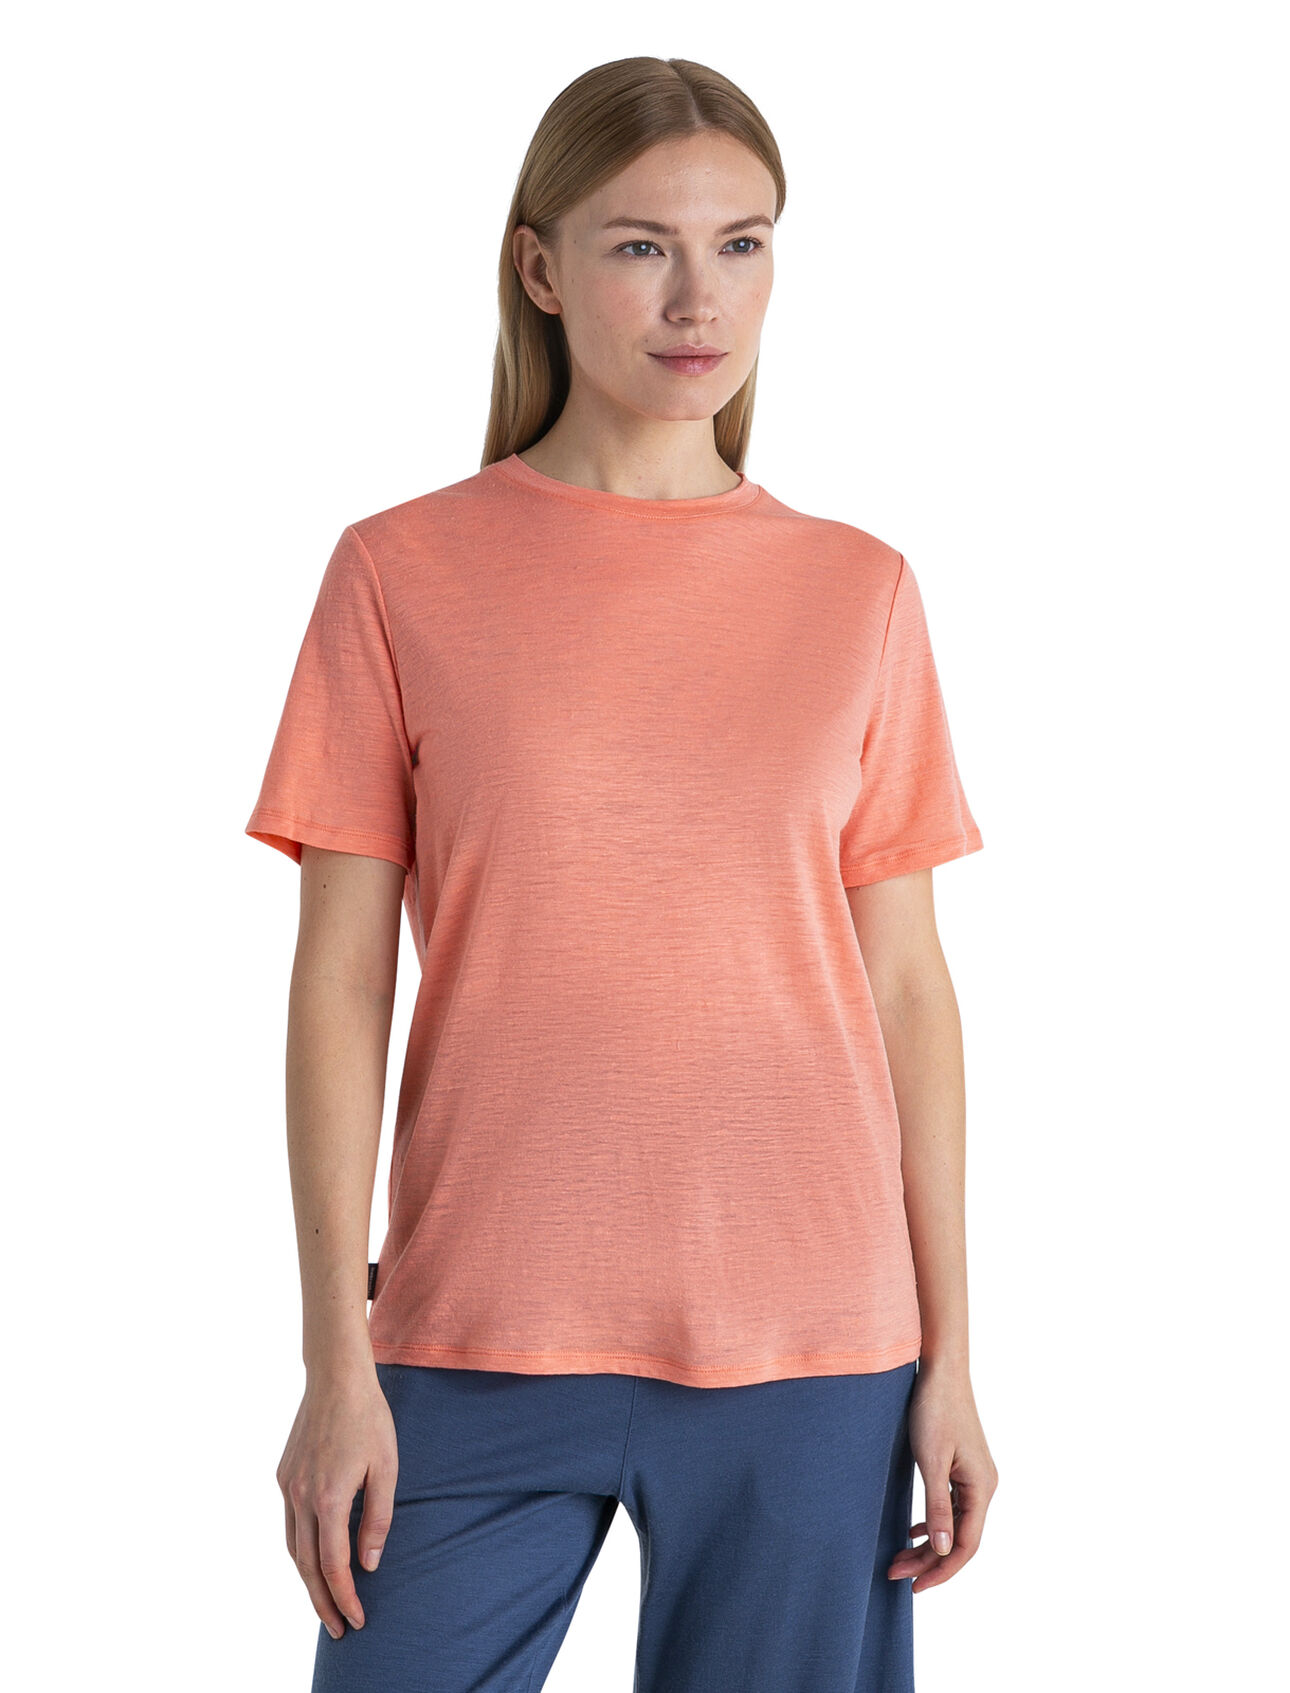 Dam Merino Linen kortärmad T-shirt Merino-linne kortärmad T-shirt är en lättviktig och mångsidig topp som är gjord i en mjuk blandning av Merinoull och linne. Det är ett självklart plagg för vardagskomfort och stil. 